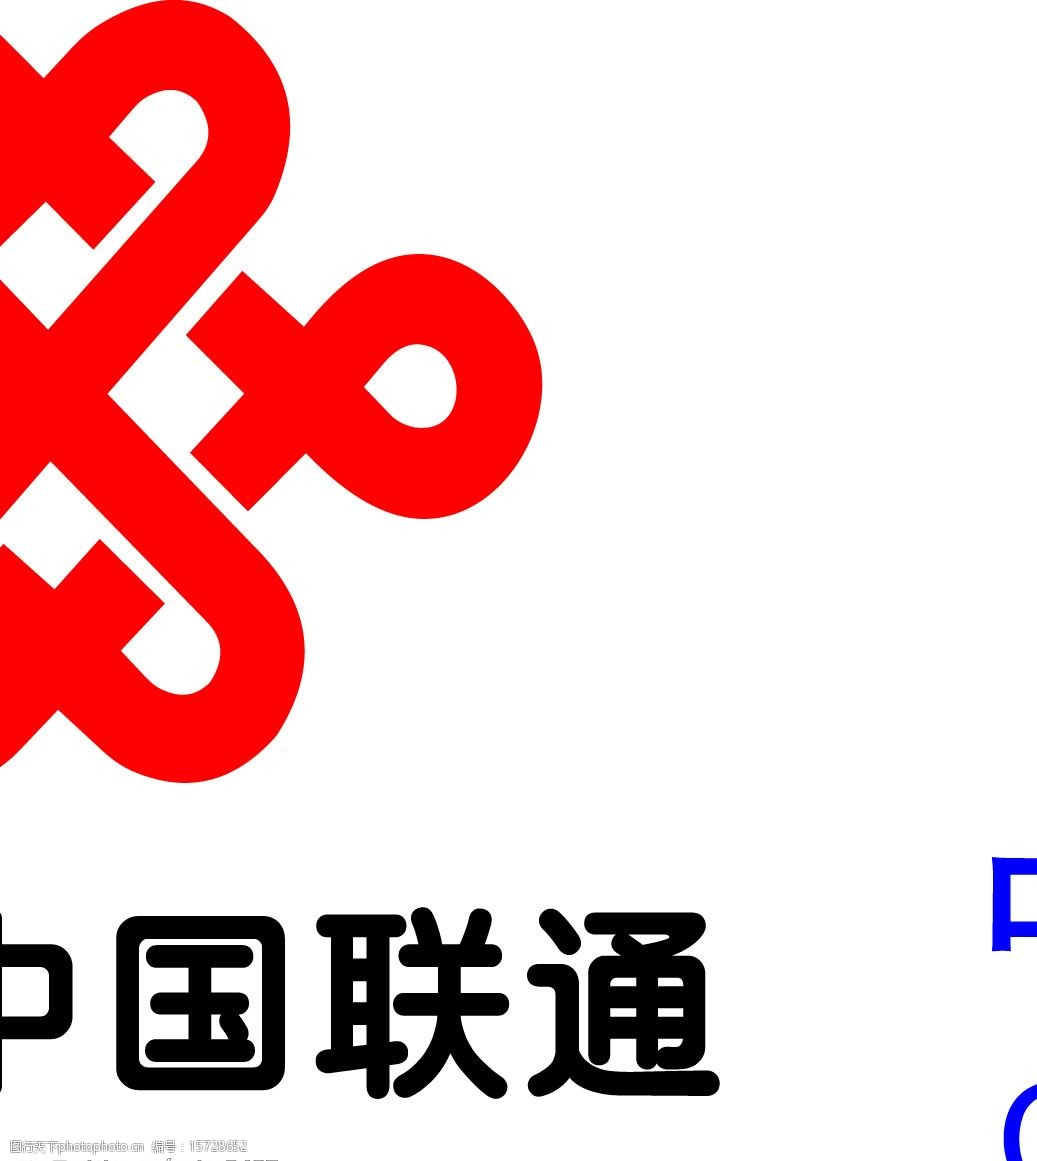 联通卡标志logo小图图片